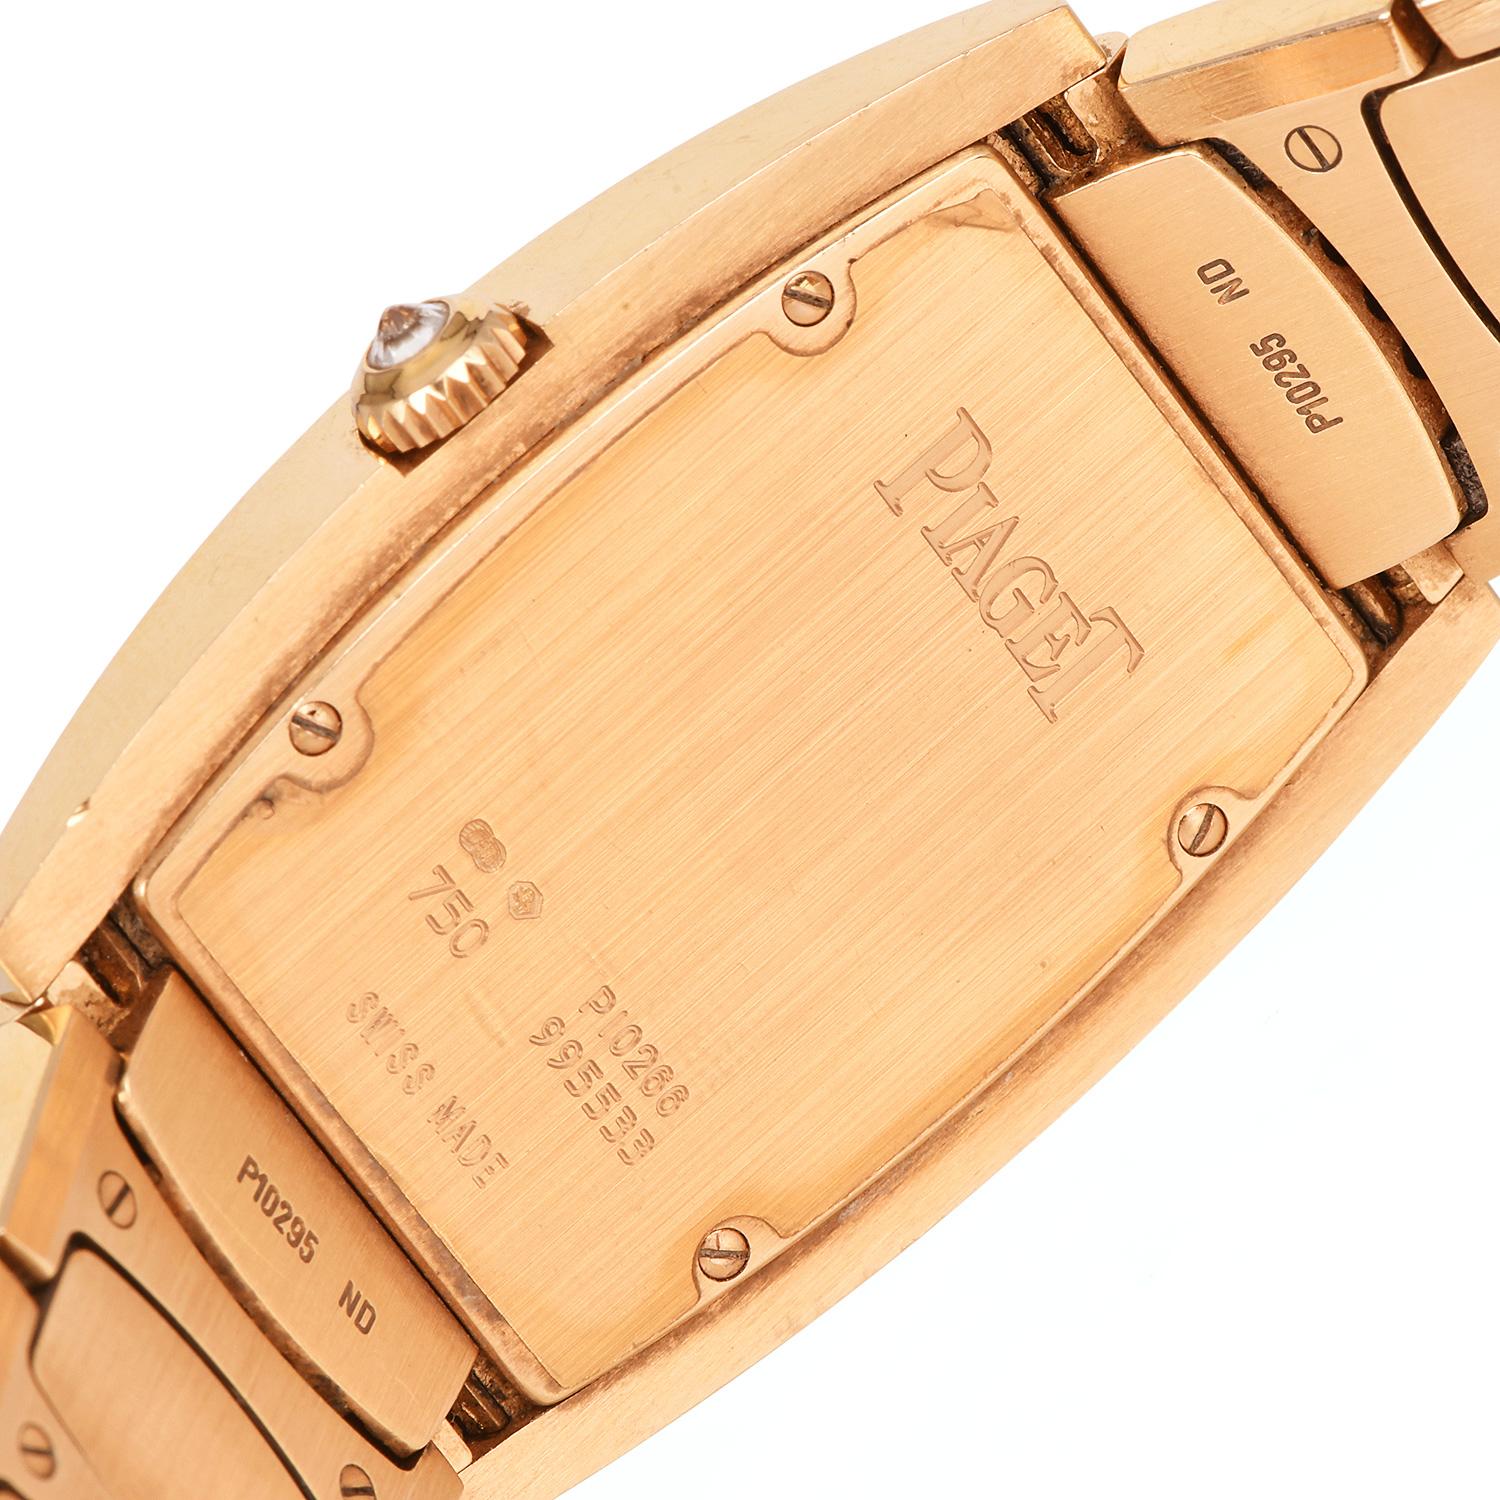 Modern Piaget Limelight Tonneau Diamond Bracelet Gold Watch 